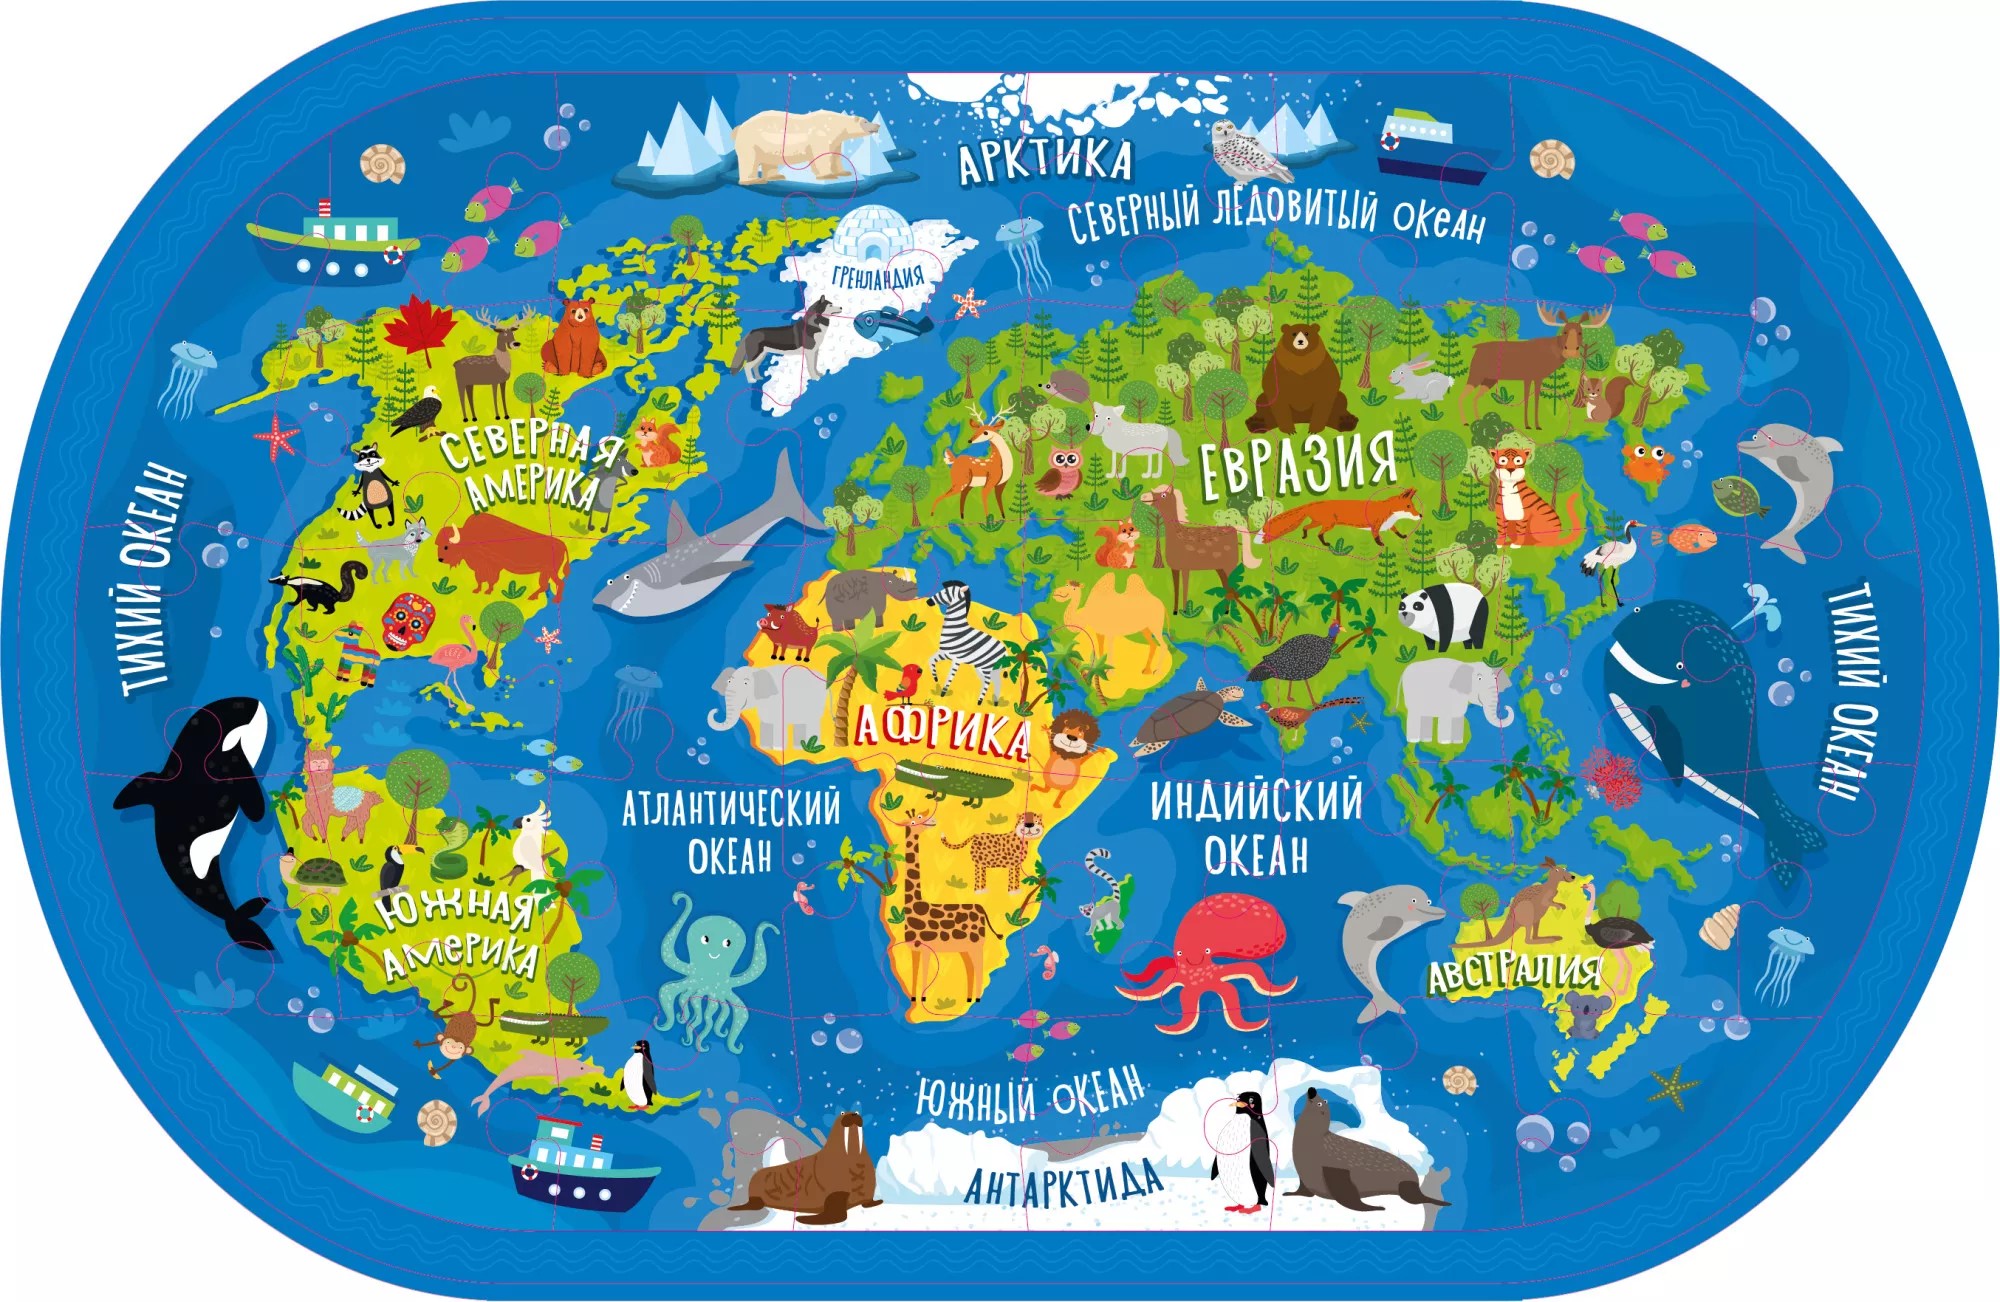 фото Пазл яигрушка карта мира, деревянный, 36 элементов 16790яиг